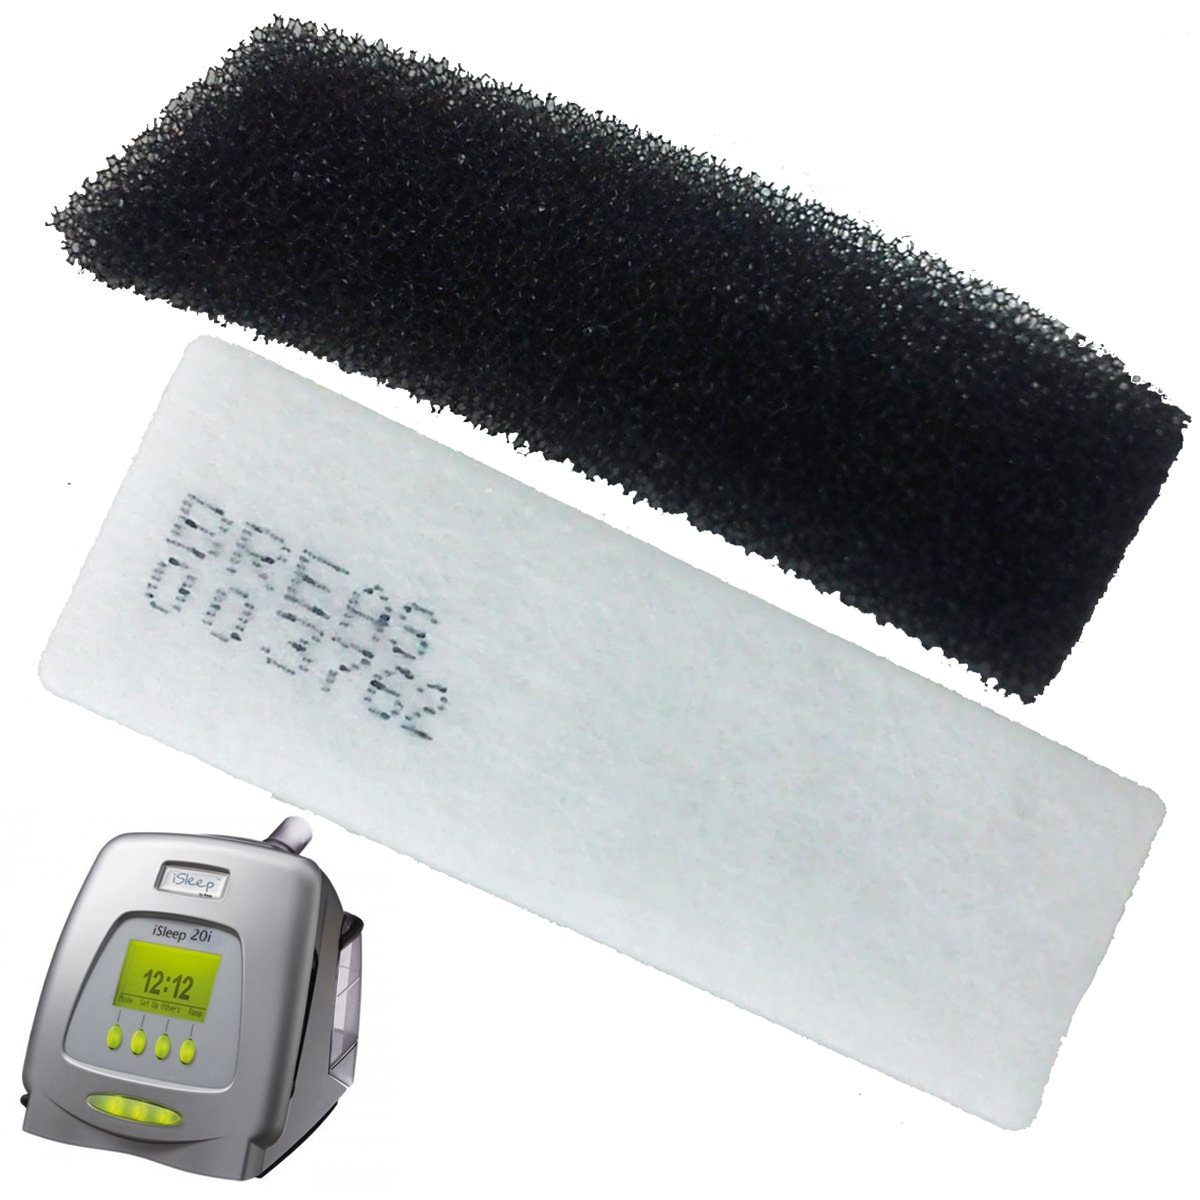 iSleep 20 Series CPAP Filters